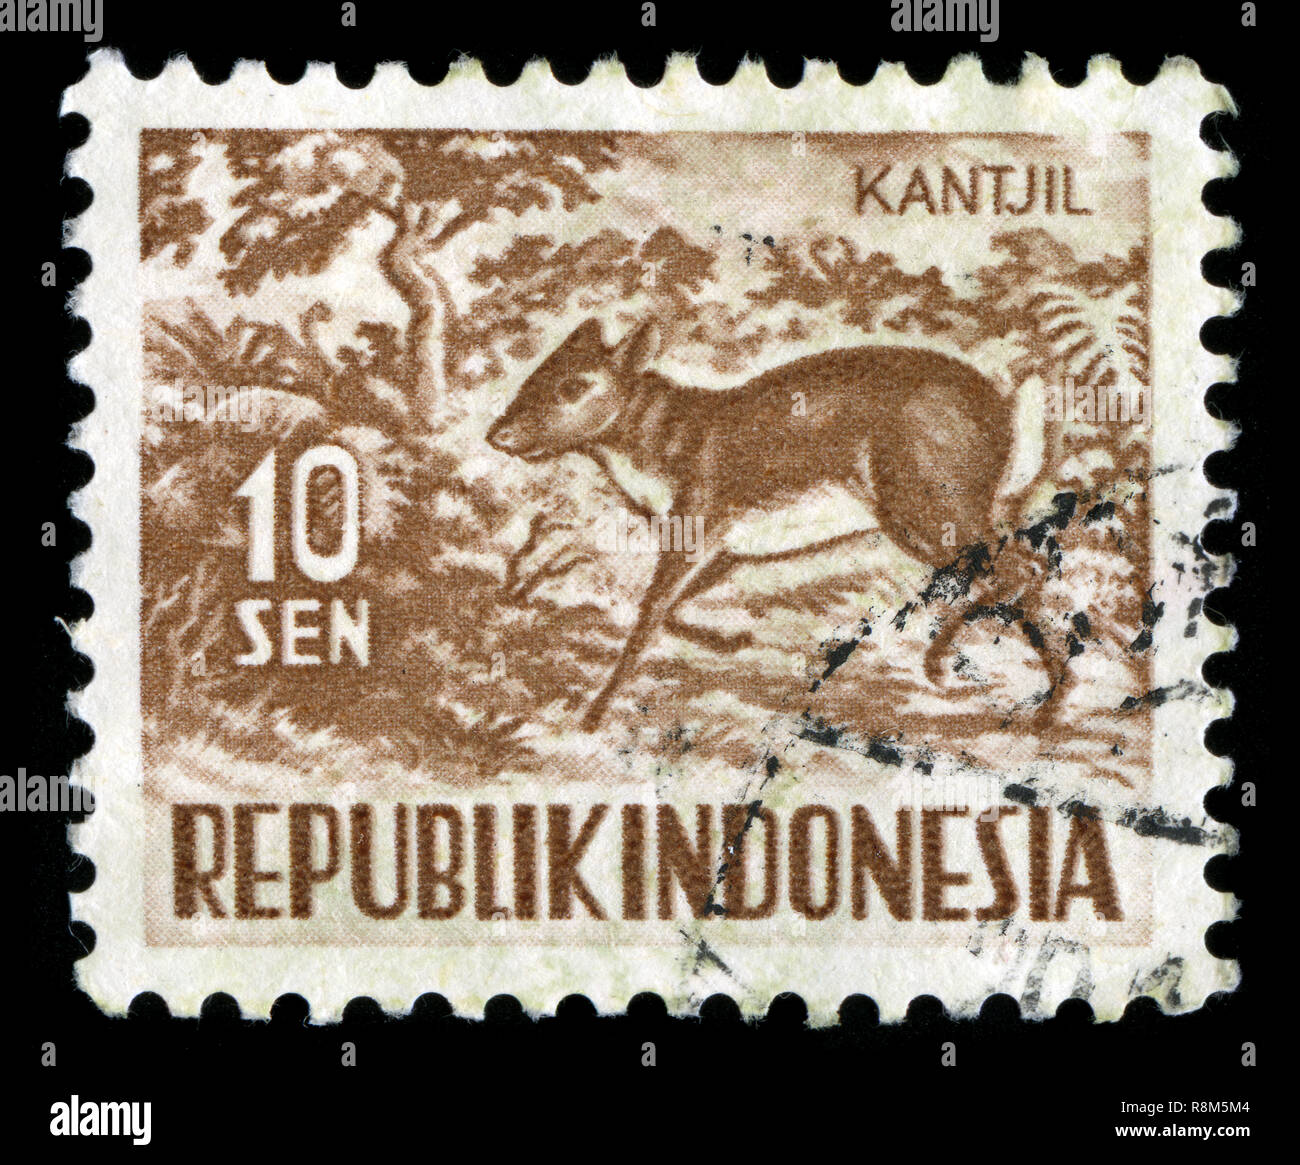 Timbre-poste d'Indonésie dans la série Faune publié en 1957 Banque D'Images